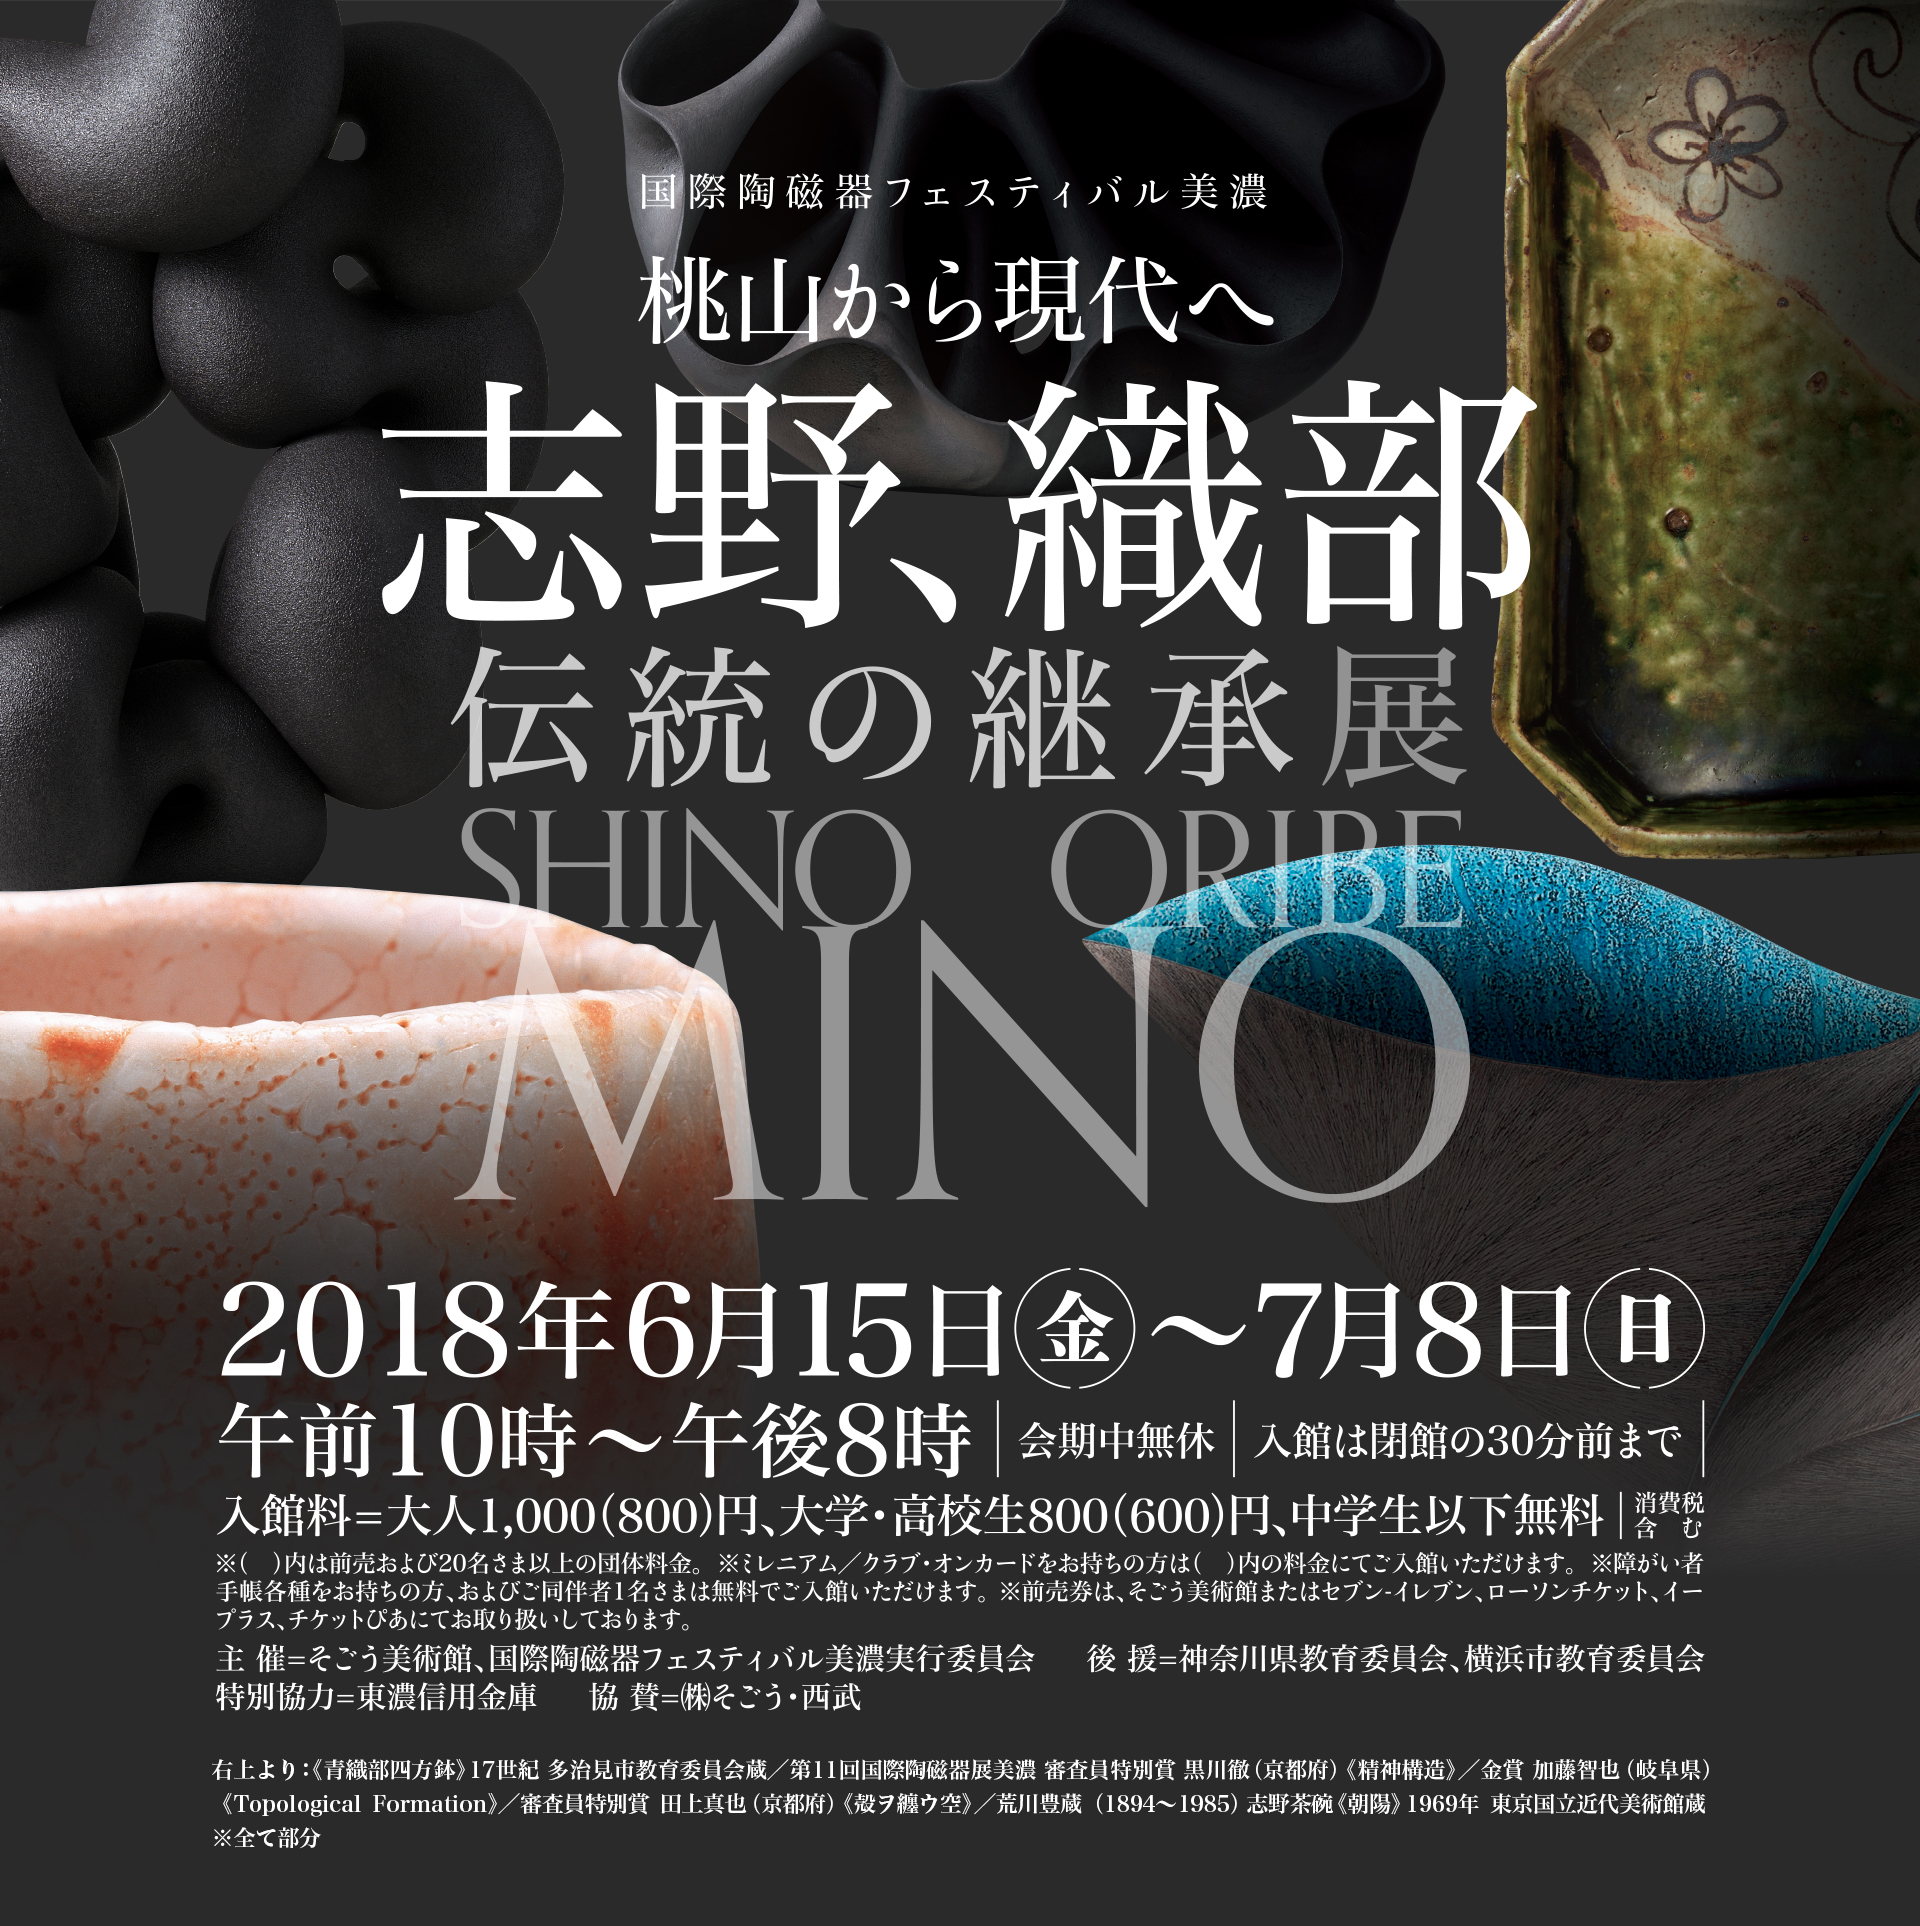 国際陶磁器フェスティバル美濃 桃山から現代へ 志野、織部 伝統の継承展